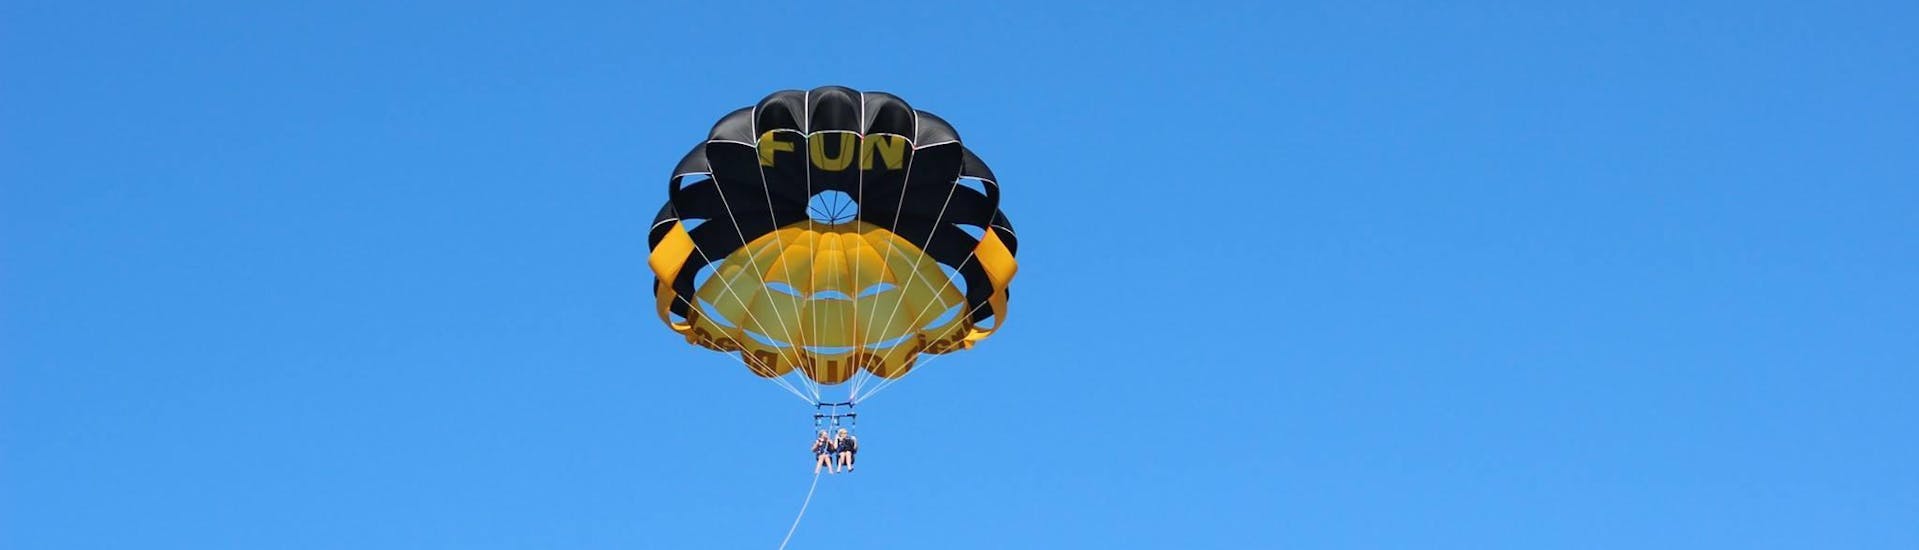 Foto del paracaídas utilizado para el Parasailing en la playa de Galé cerca de Albufeira con Nautifun Galé Albufeira